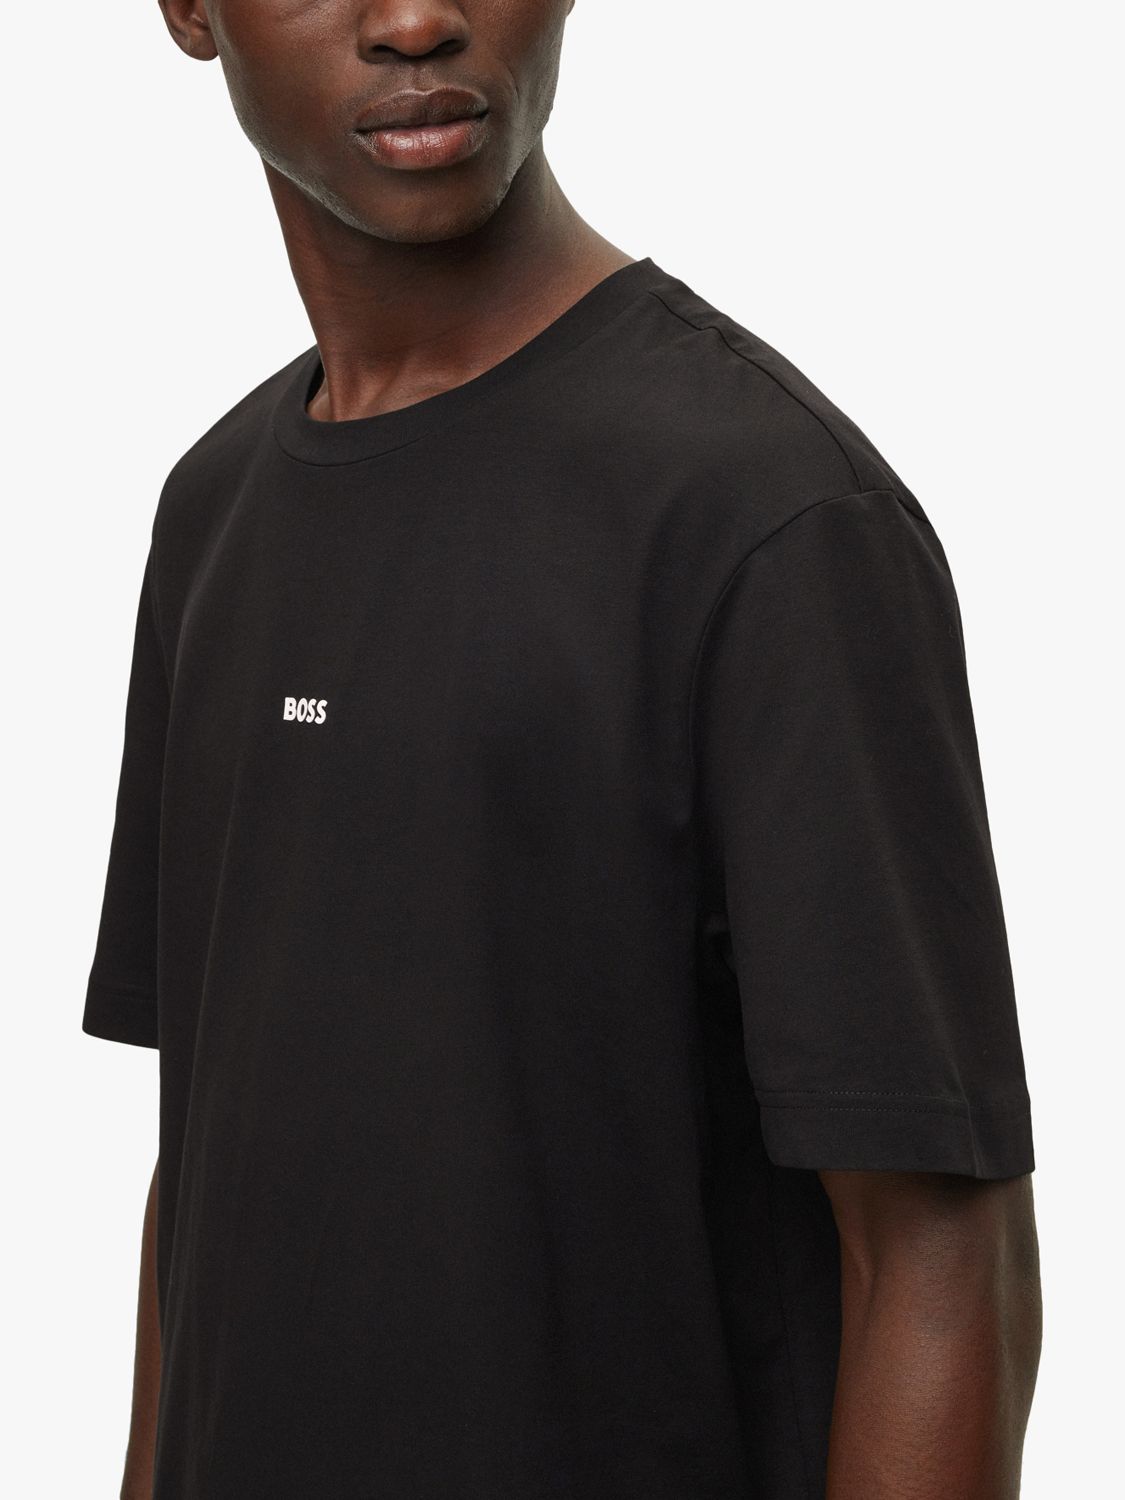 BOSS TChup Logo T-Shirt, Black, S